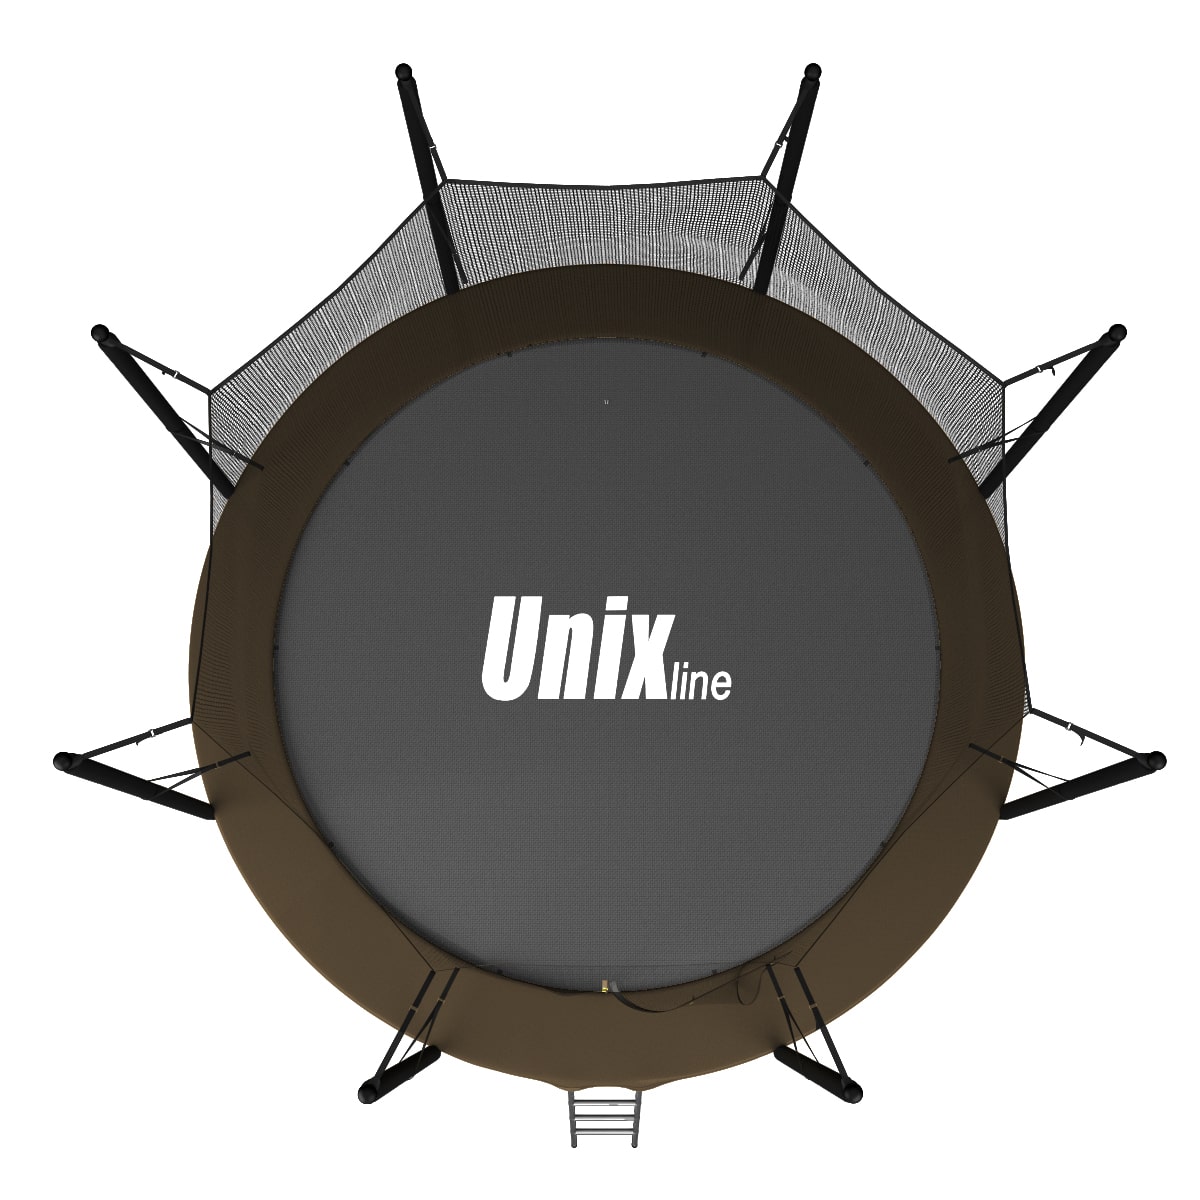 Батут UNIX line Black&Brown 8 ft, внутренняя сетка